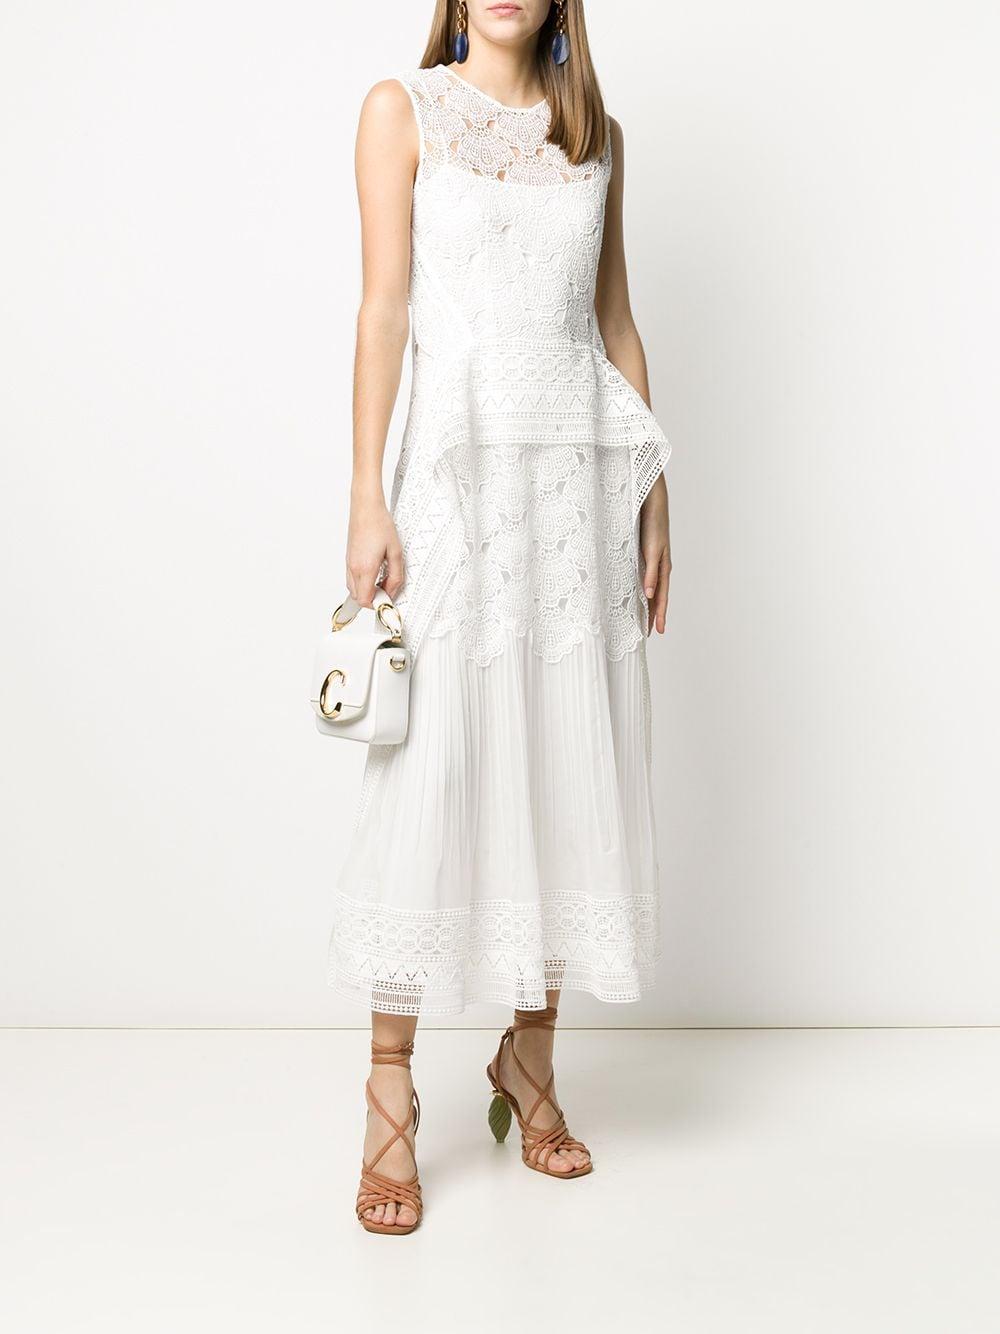 Alberta Ferretti Silk Embroidered Dress in White - Lyst